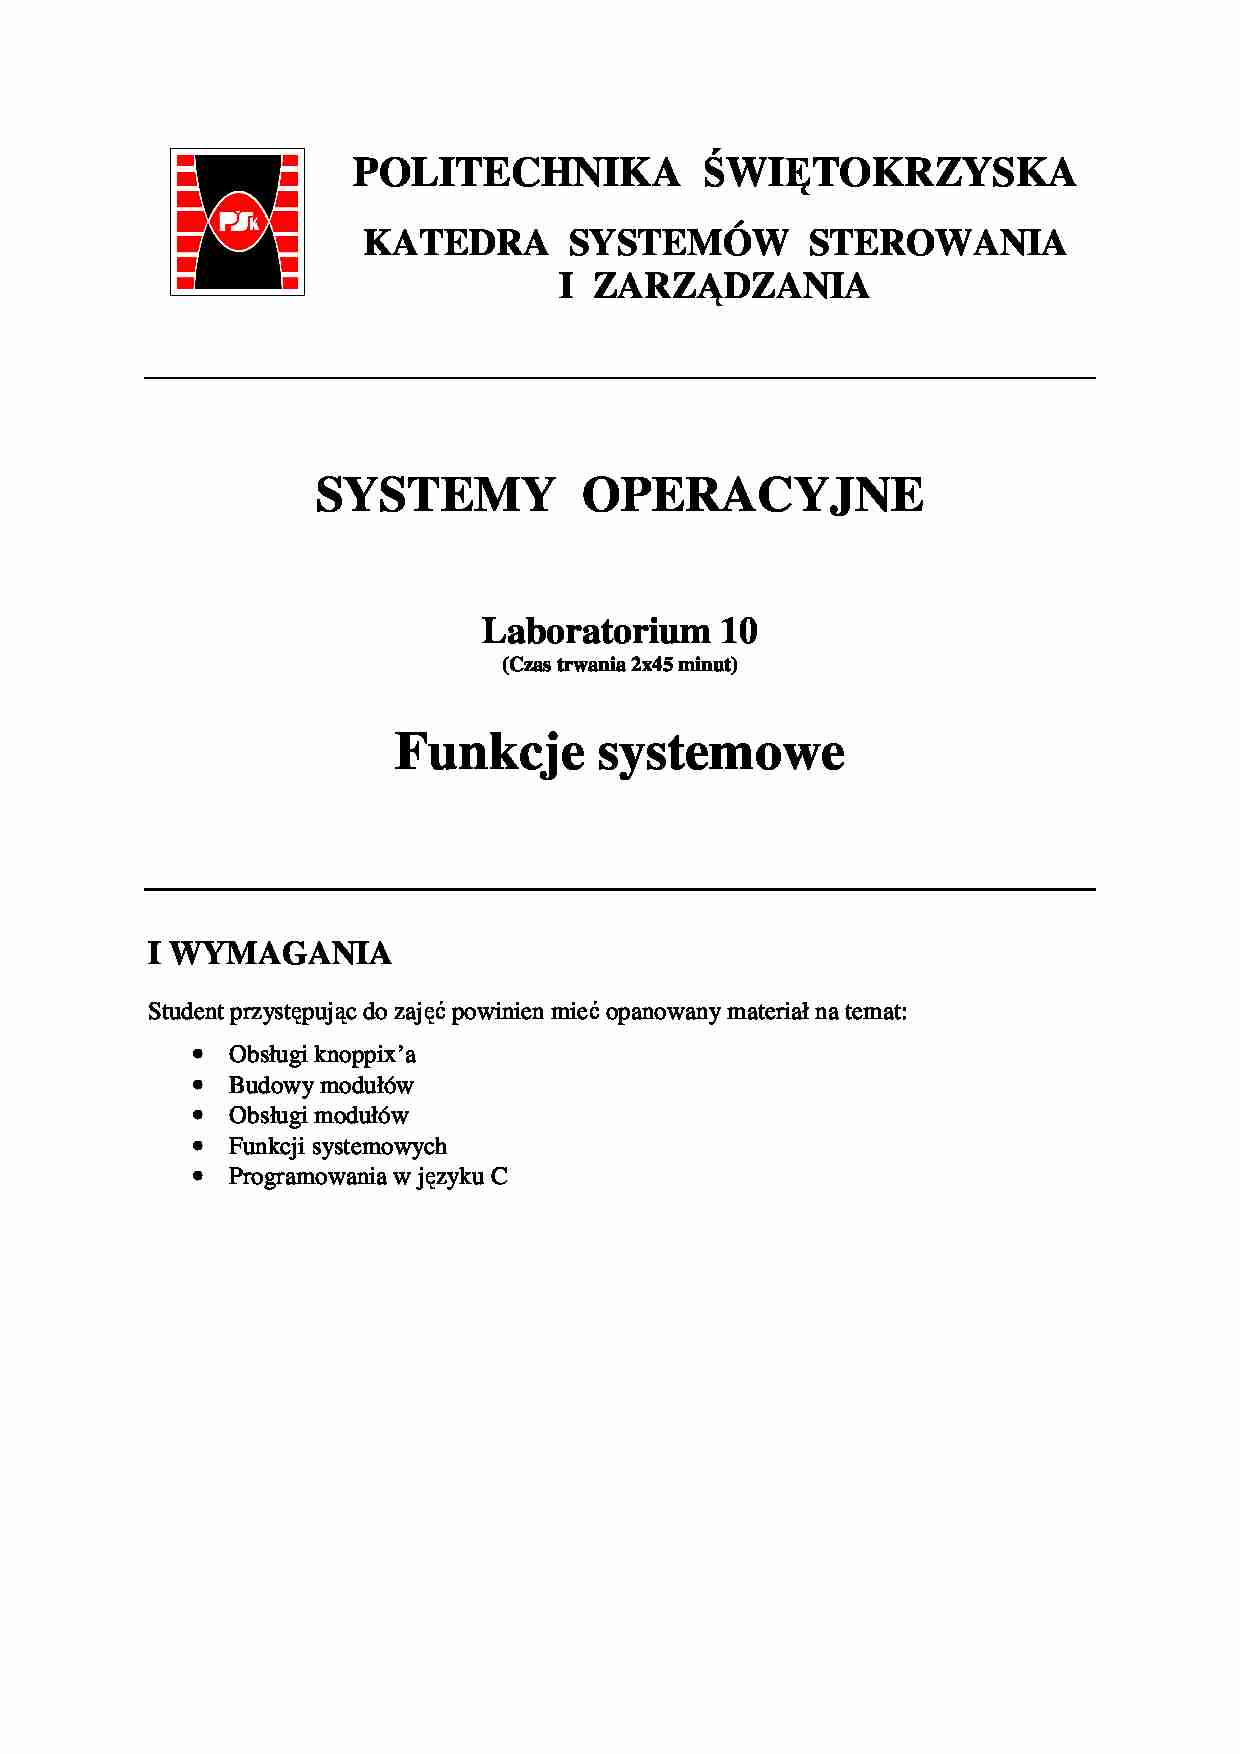 Systemy operacyjne, moduły - strona 1